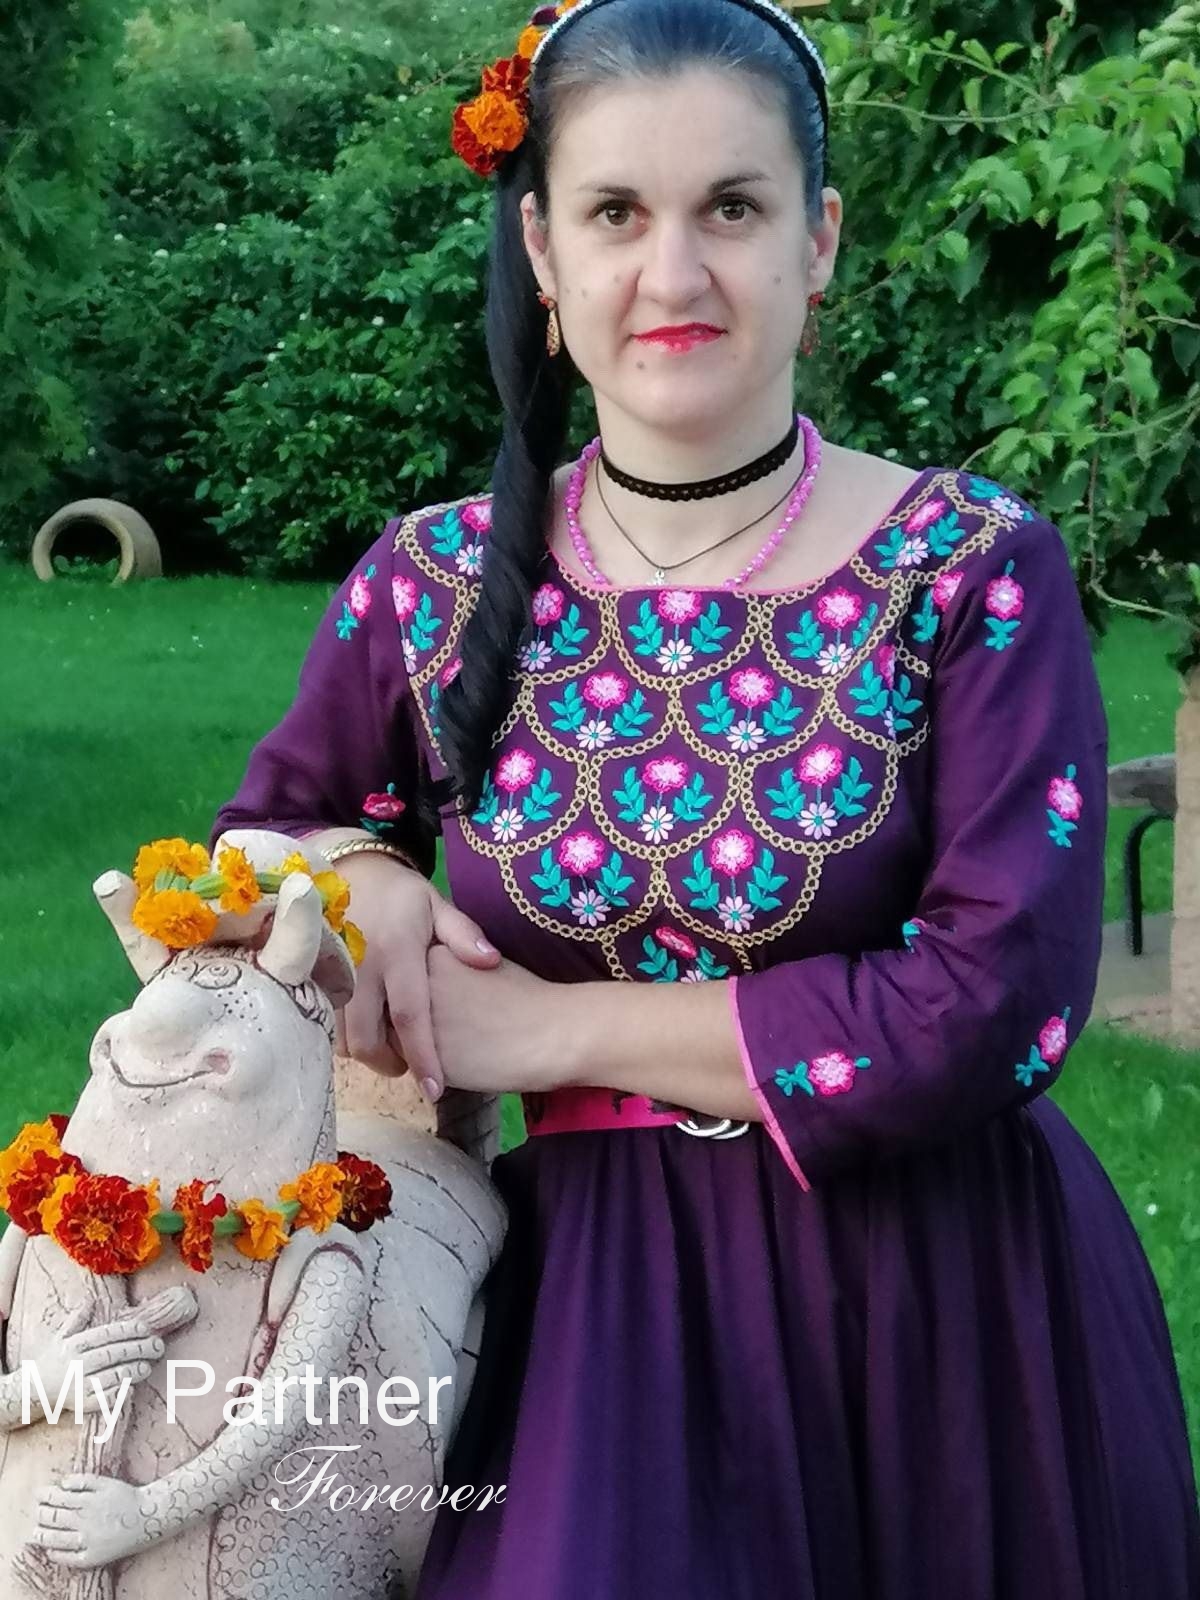 Pretty Bride from Belarus - Ekaterina from Grodno, Belarus